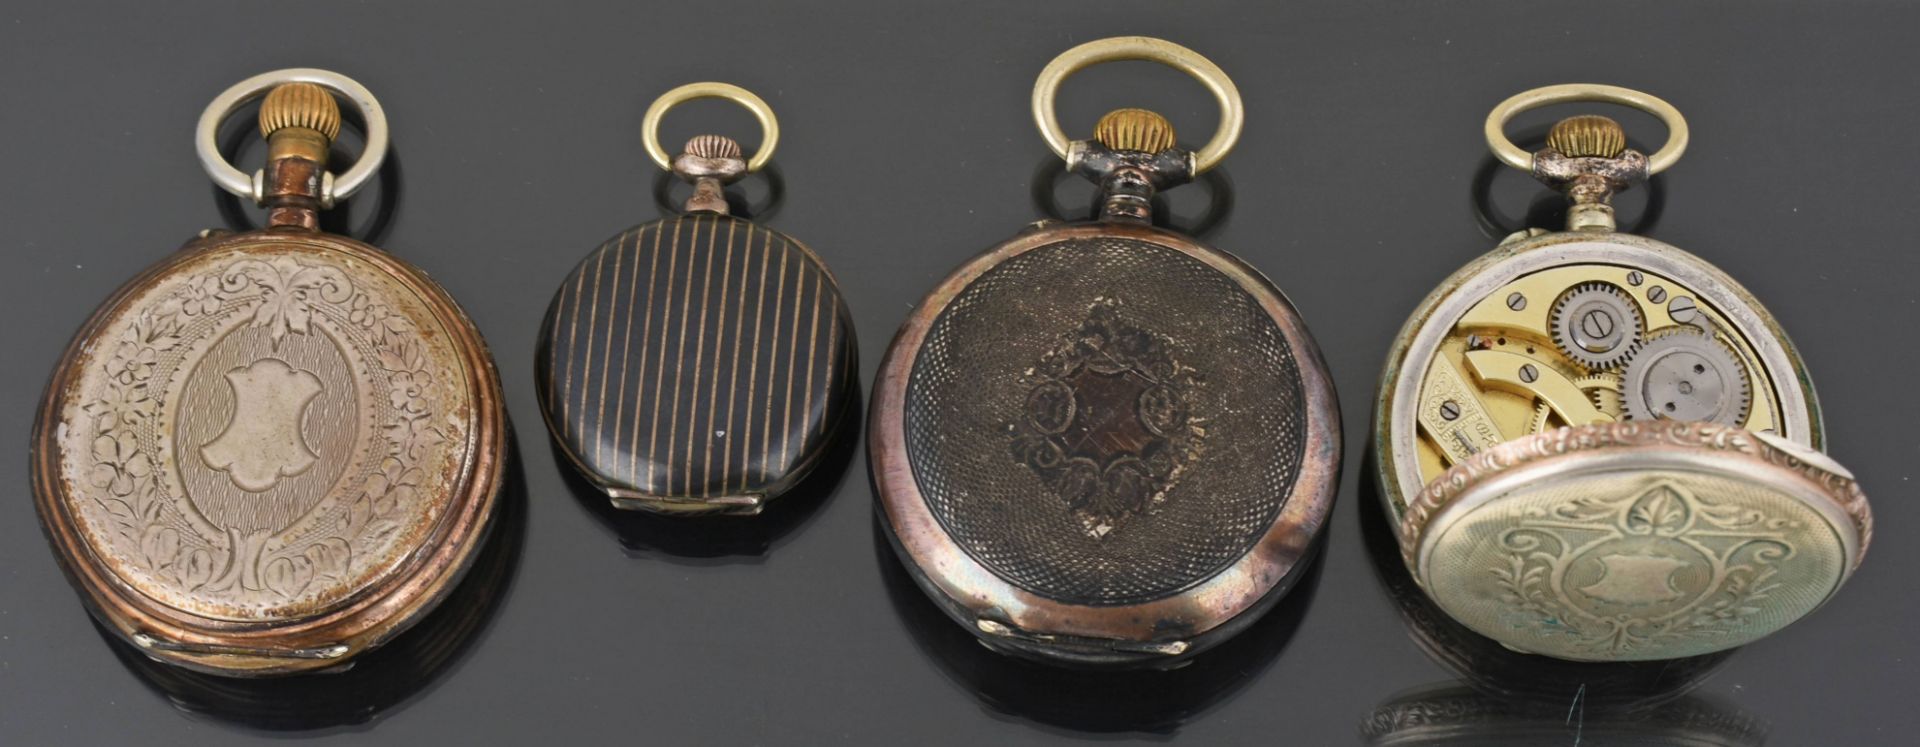 Vier Taschenuhren Gehäuse Silber, ungeprüft, zur Restaurierung oder als Ersatzteilspender, um 1900 - Bild 3 aus 3